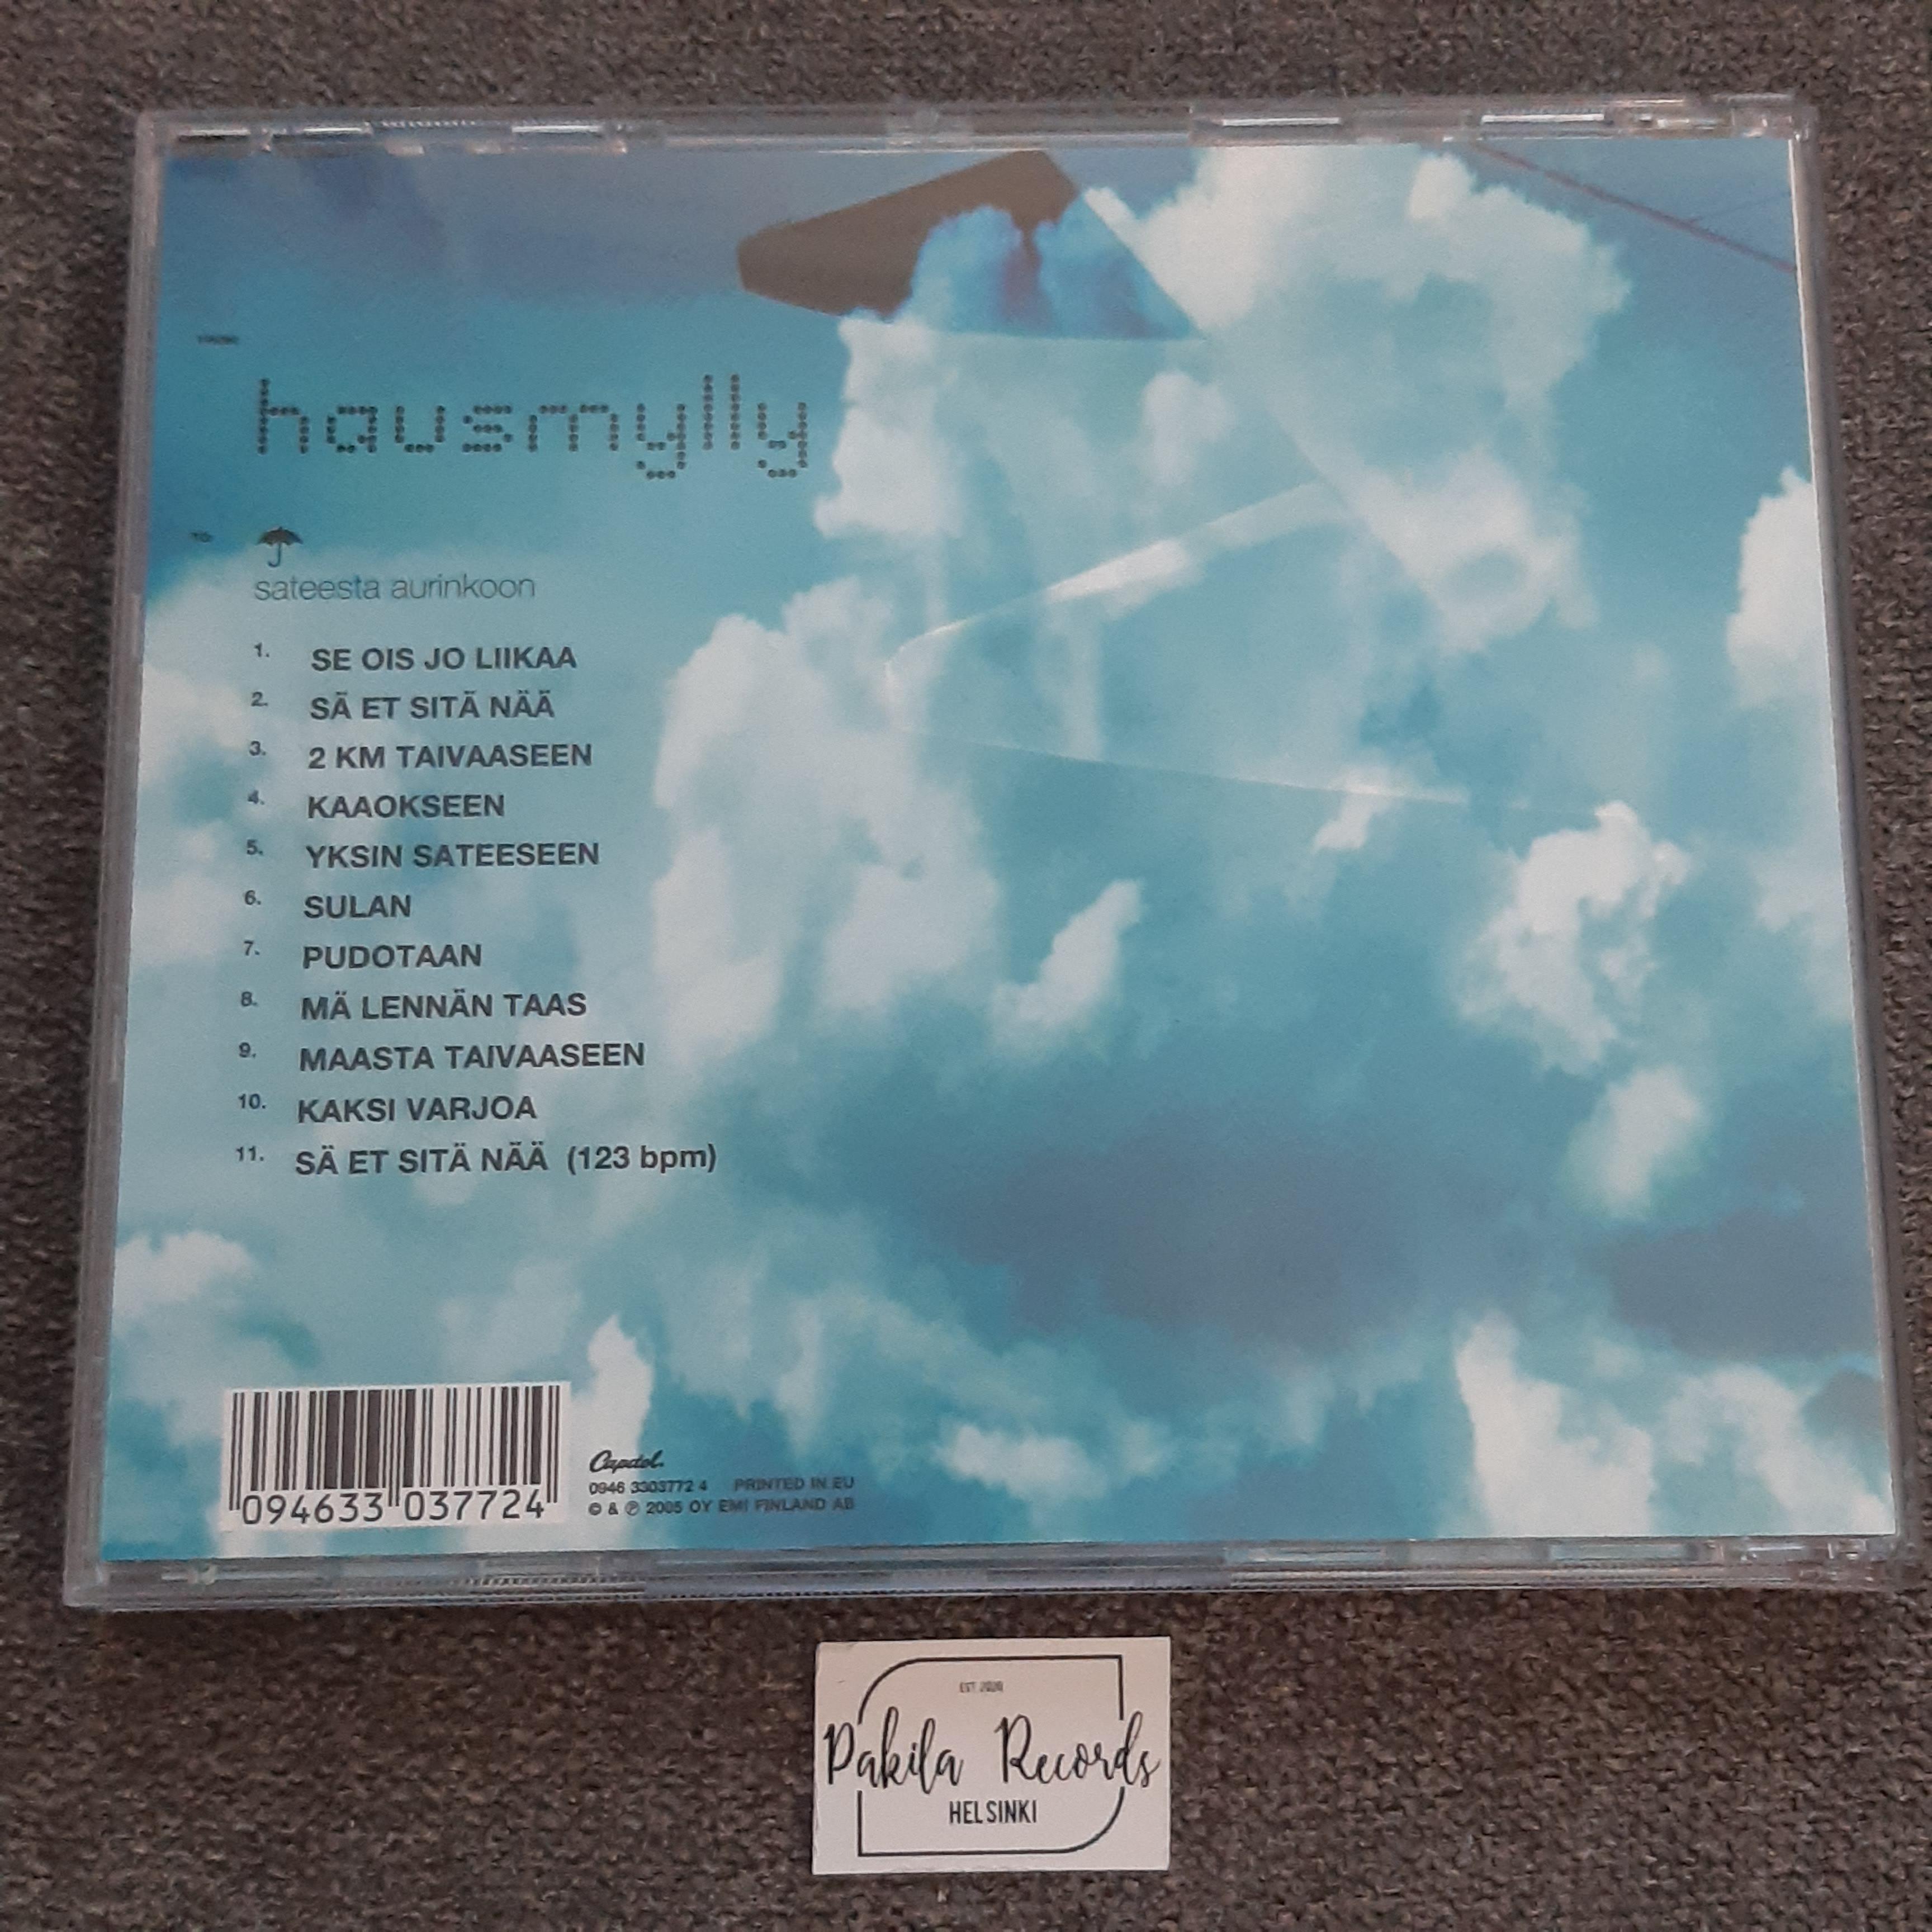 Hausmylly - Sateesta aurinkoon - CD (käytetty)